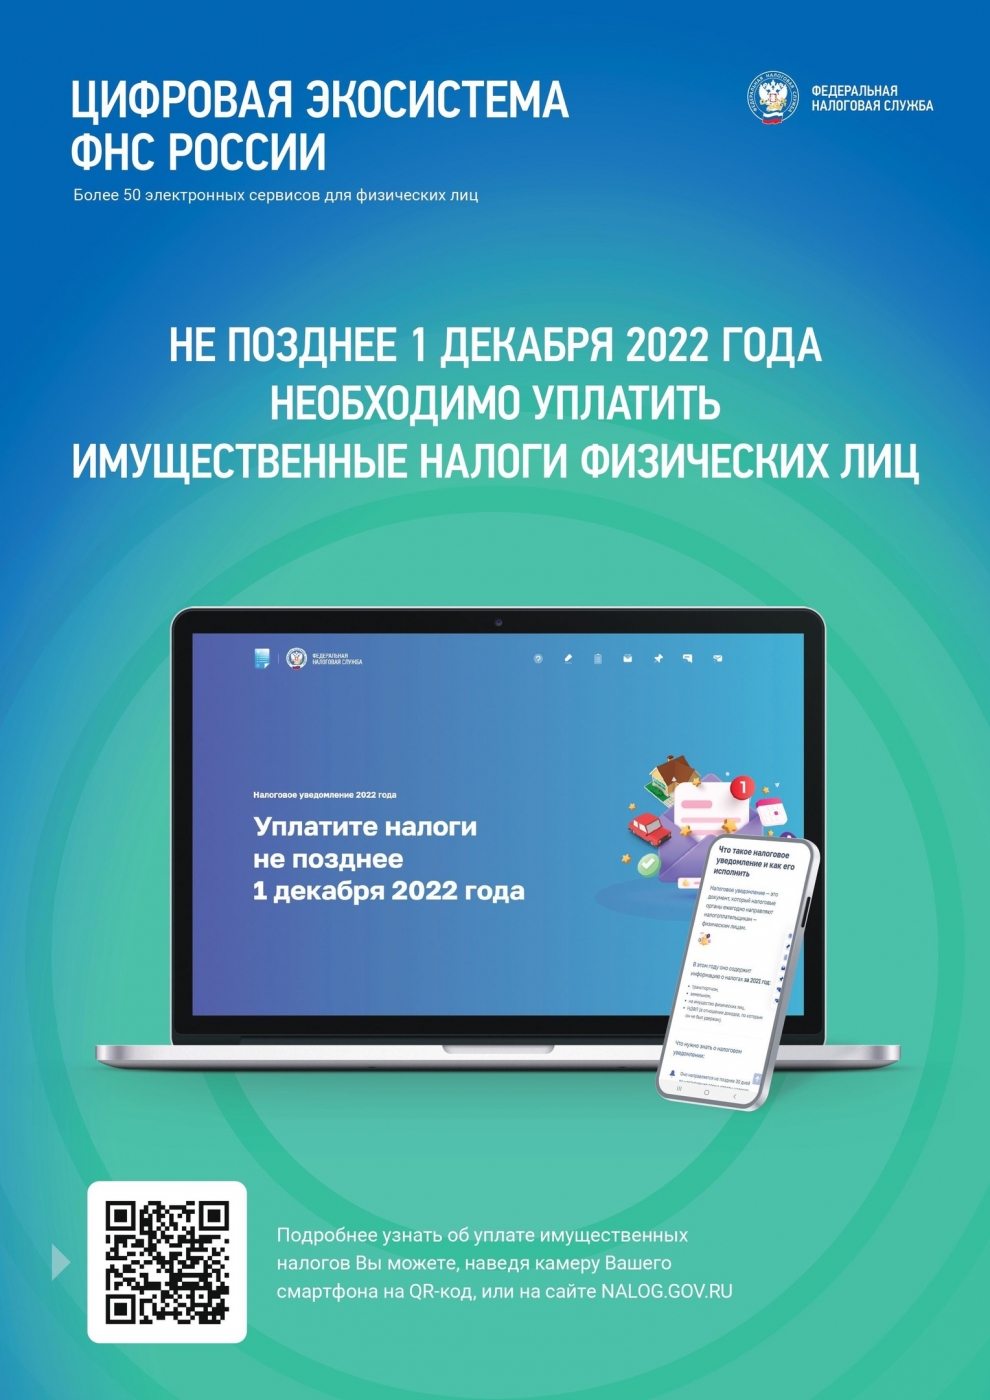 Межрайонная ИФНС России № 11 по ХМАО–Югре напоминает, что срок уплаты имущественных налогов за 2021 год истекает 1 декабря.